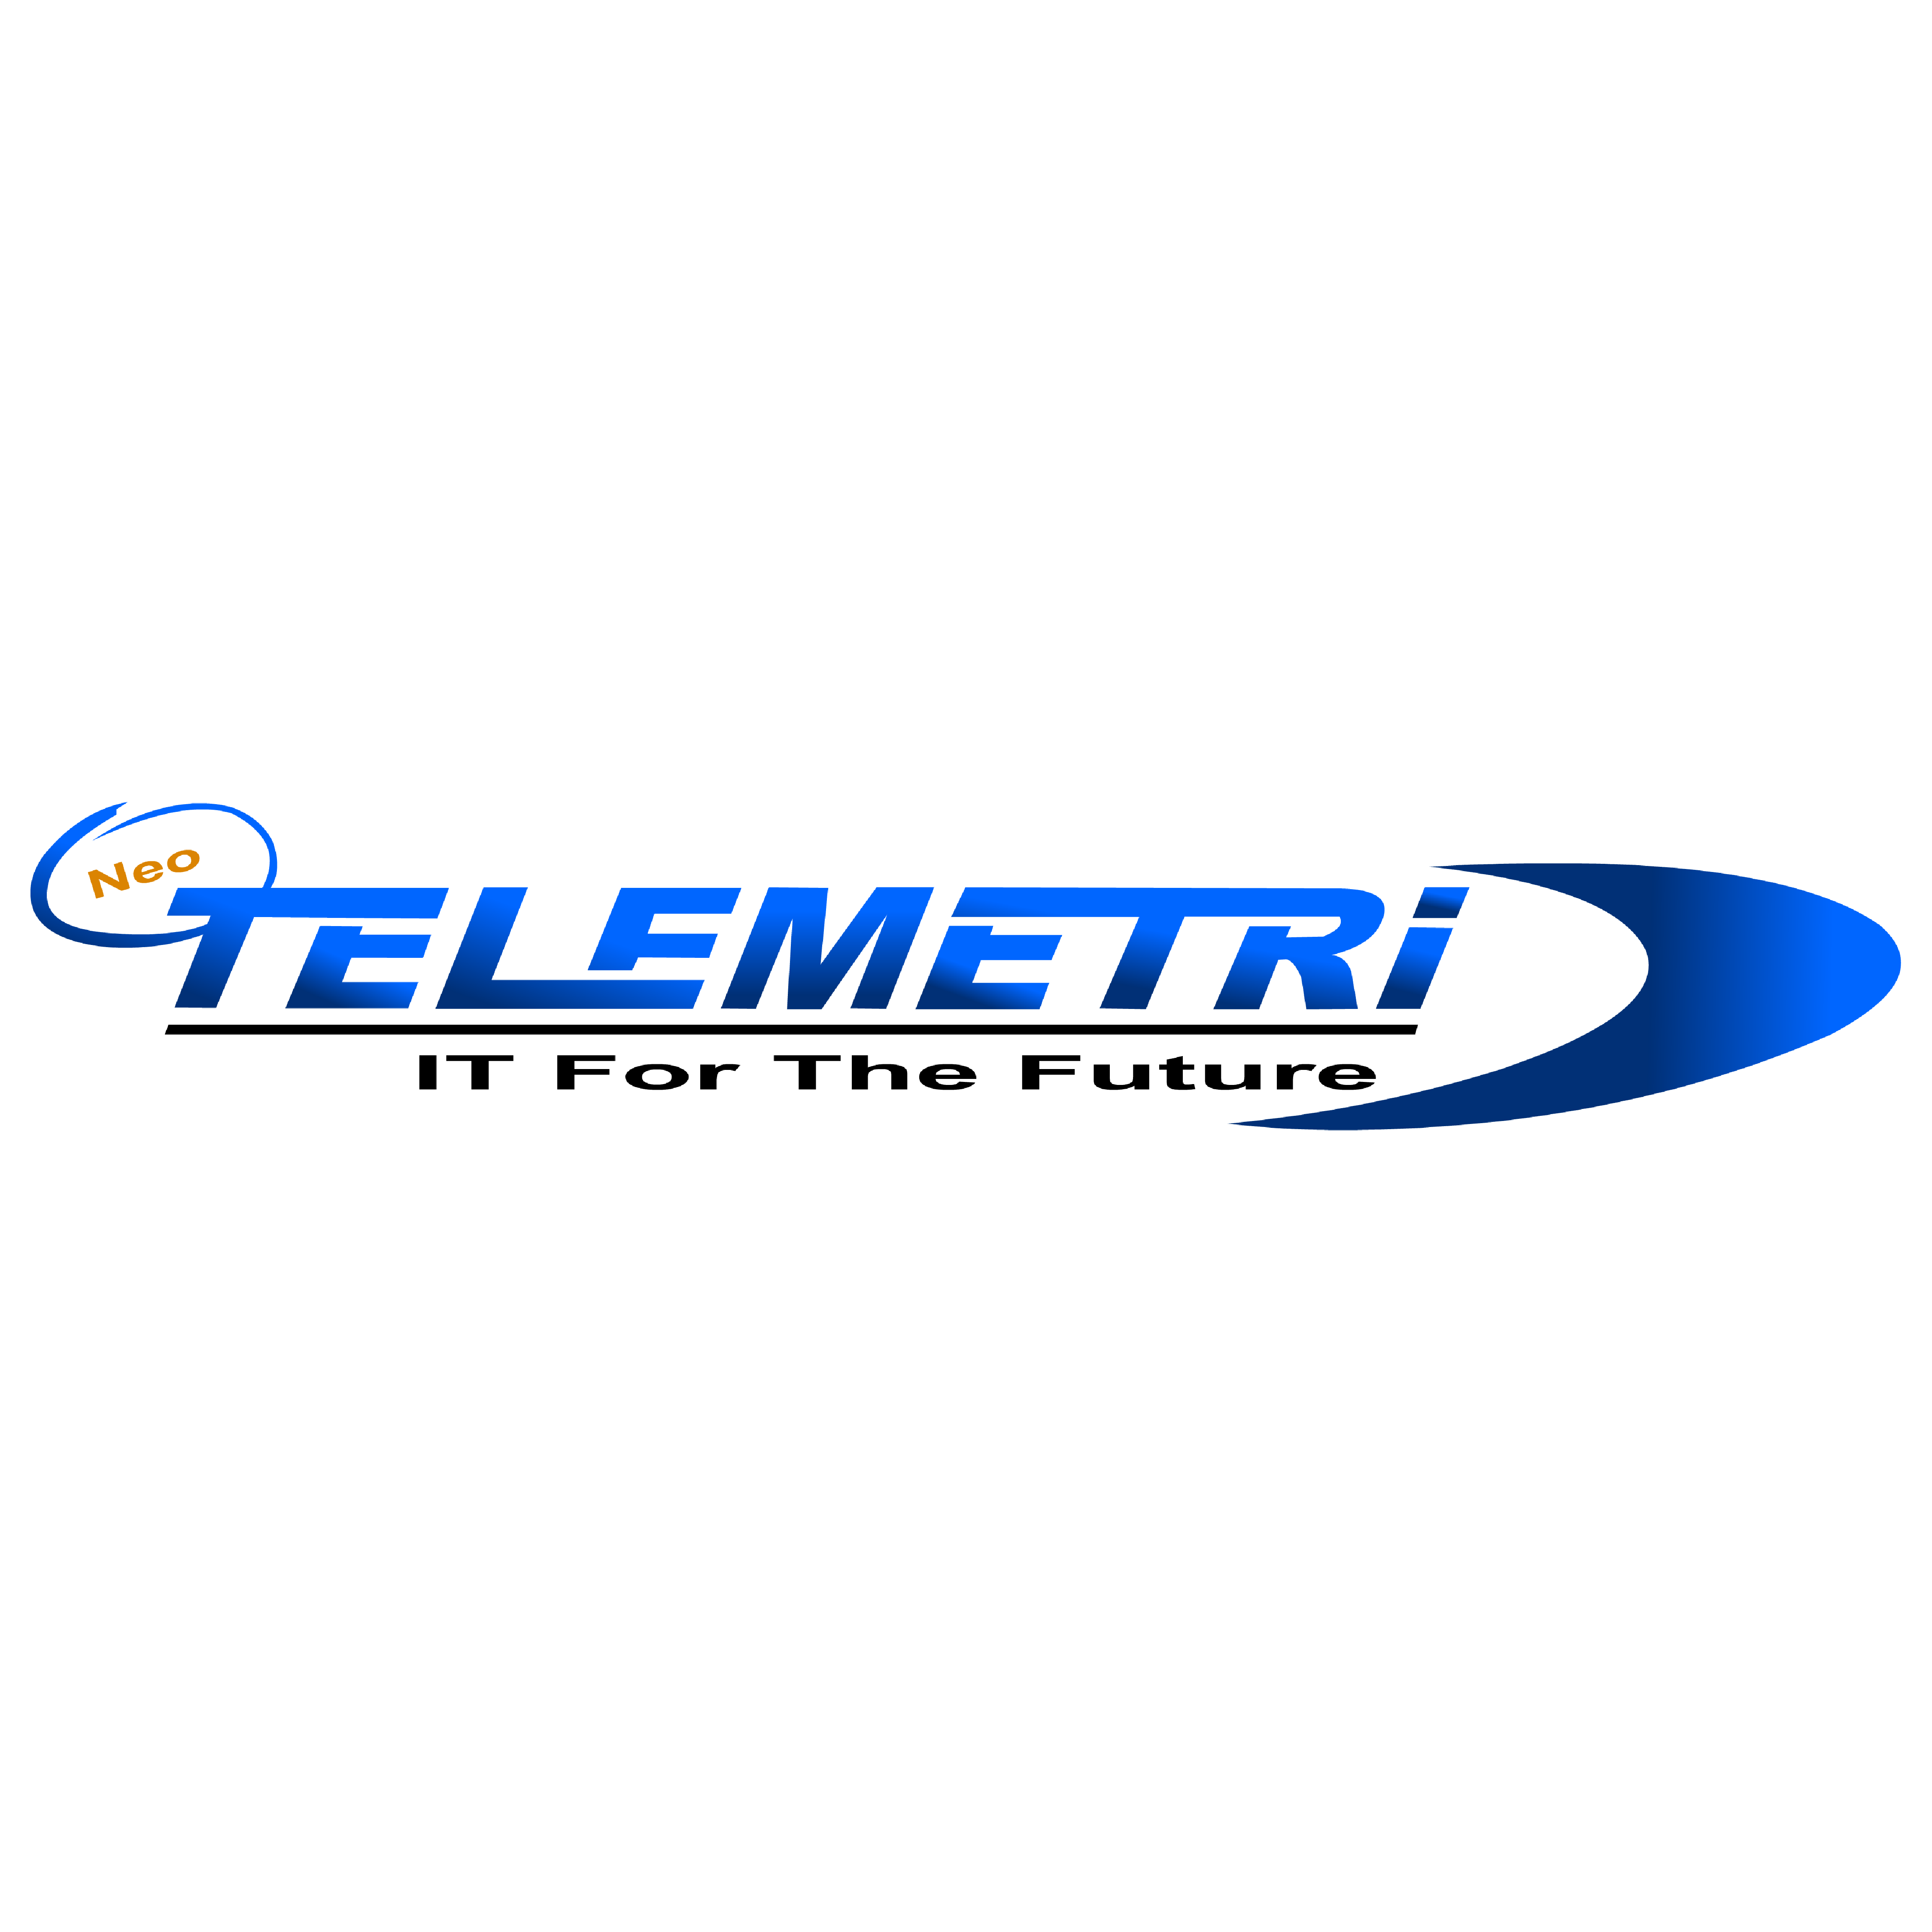 Neo Telemetri